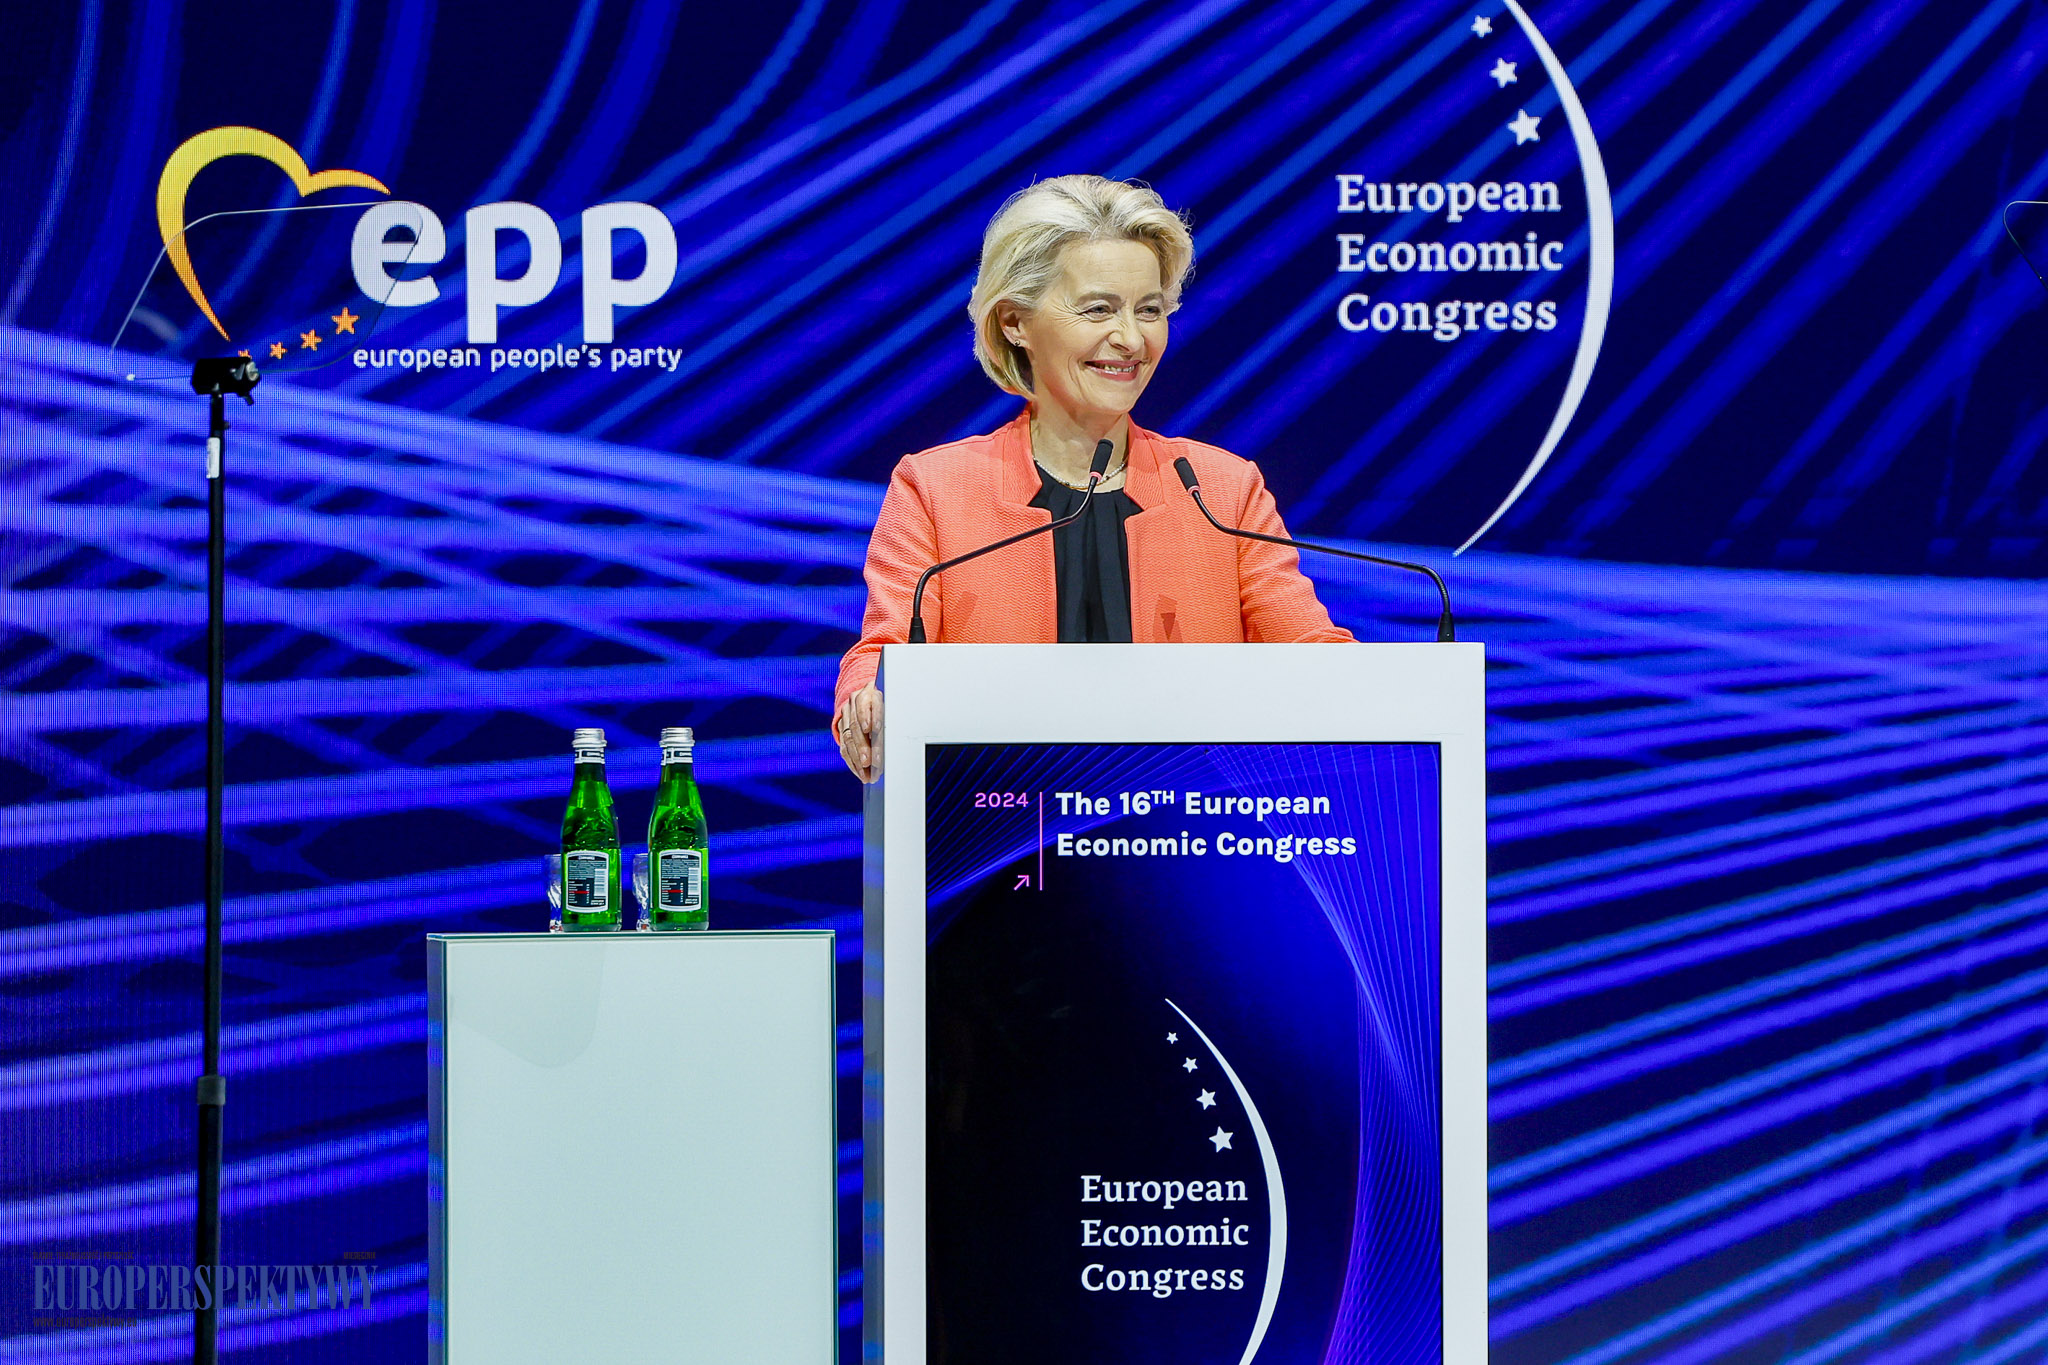 Na zdjęciu Ursula von der Leyen
Przewodnicząca Komisji Europejskiej podczas sesji inaugurującej XVI Europejski Kongres Gospodarczy.
